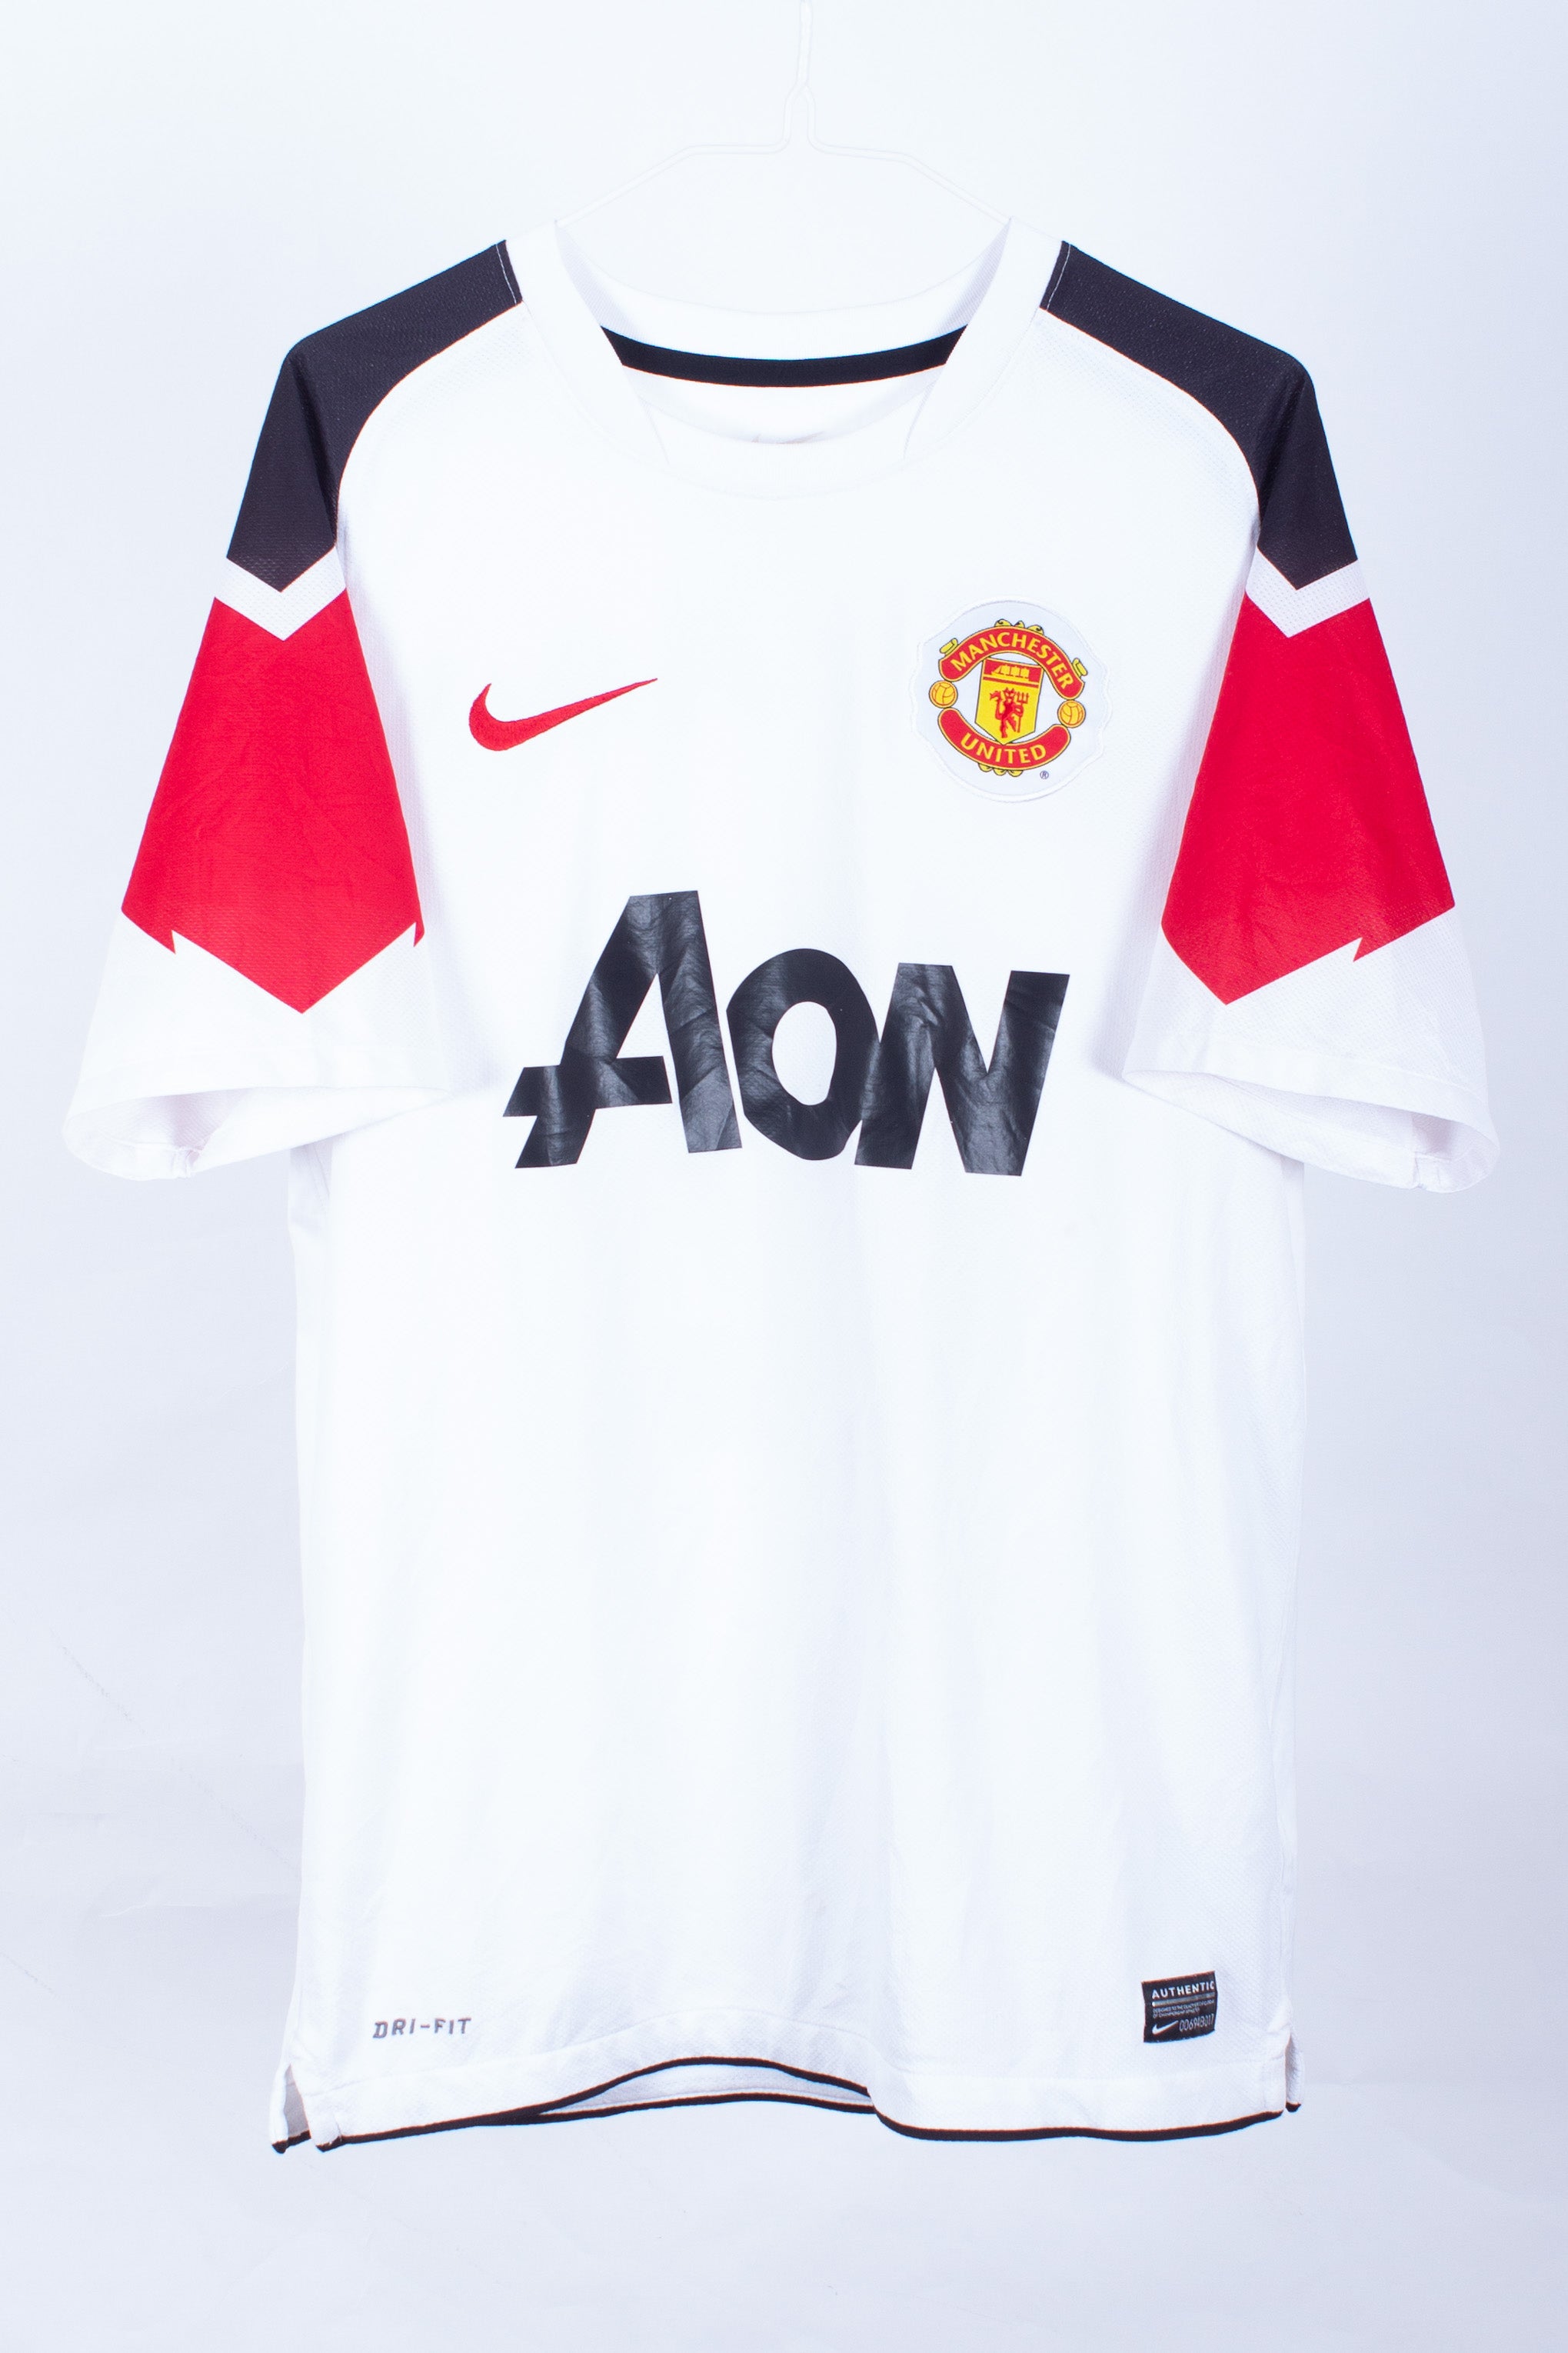 Manchester United 2010/11 Away Shirt (Chicharito #14)